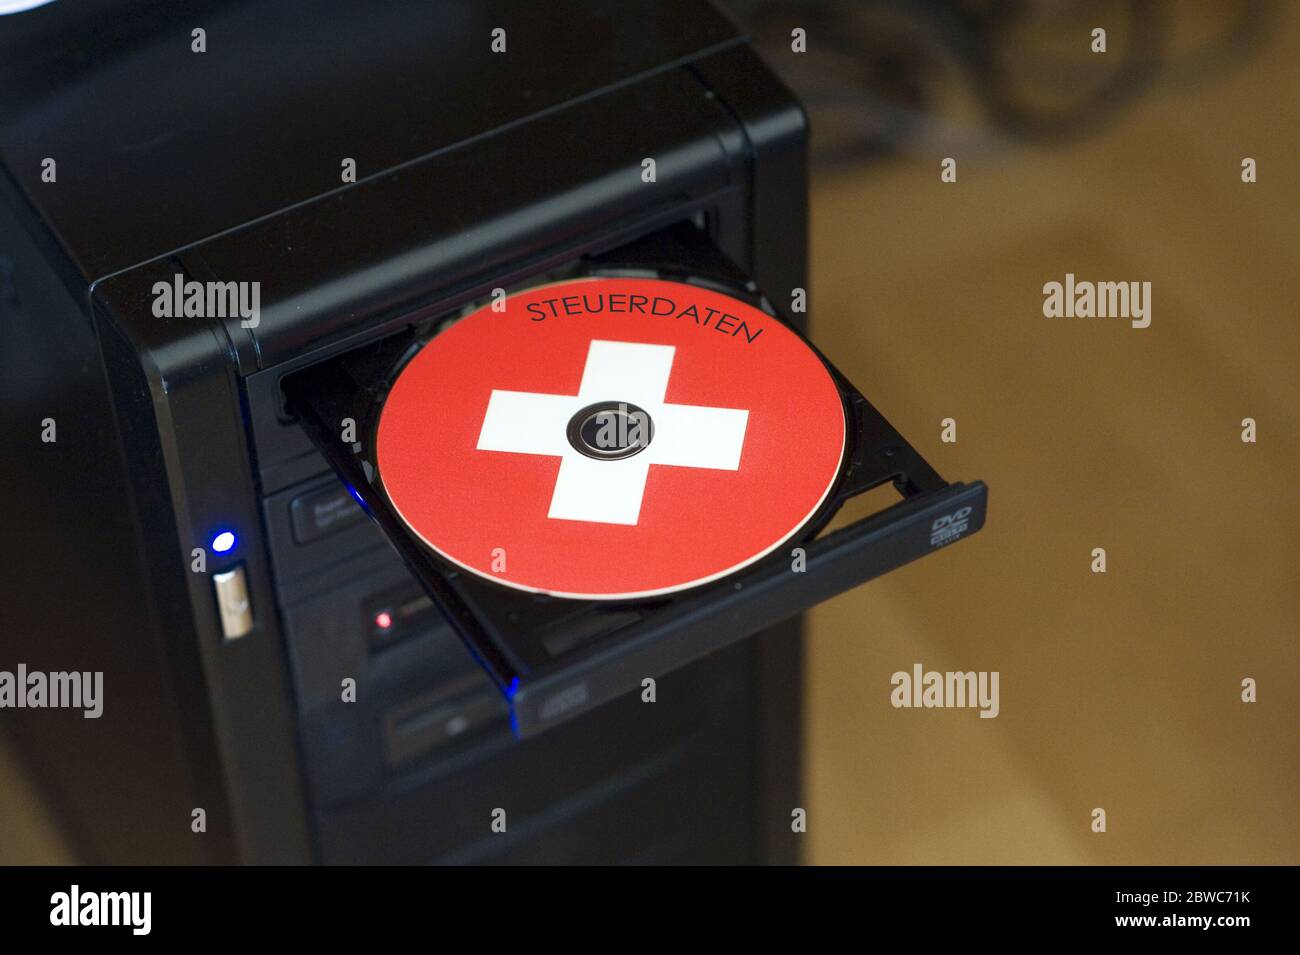 Schweizer Daten CD, Scharzgeld, anonyme Konten, Bankkunden, Foto de stock